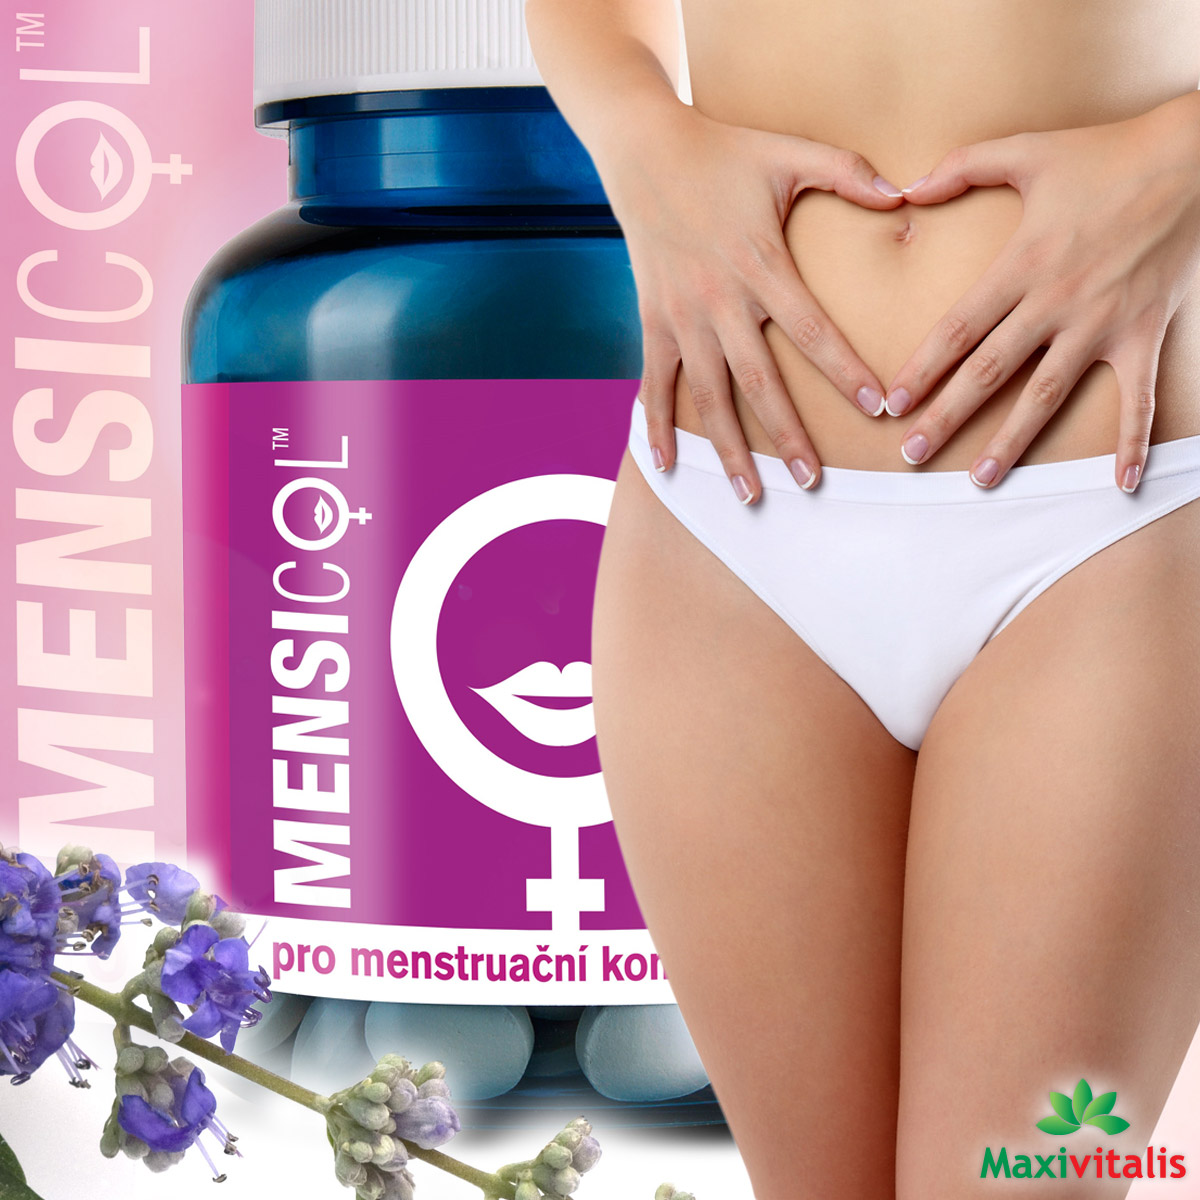 Mensicol je přípravek určený pro náš menstruační komfort. Pomáhá ke zdraví našemu pohlavnímu systému, umí optimalizovat menstruační krvácení a zmírnit problémy spojené s menopauzou.